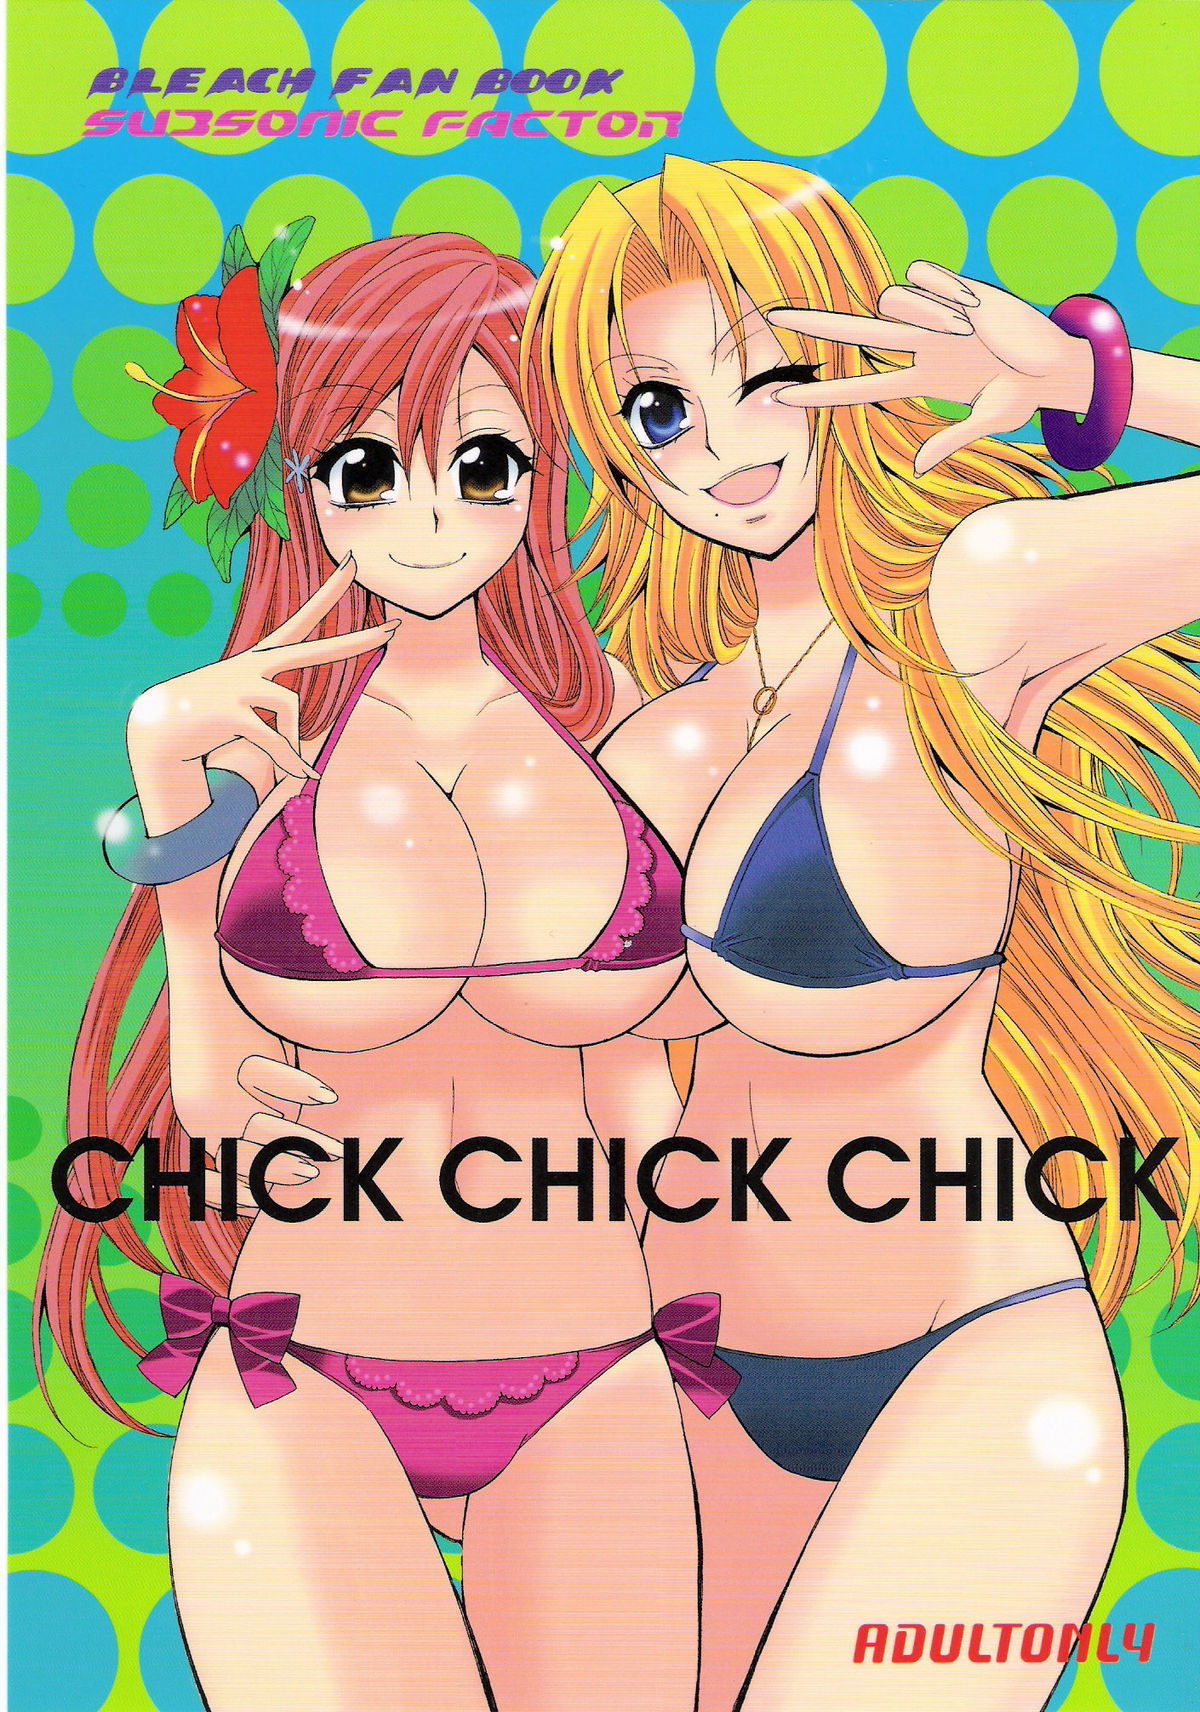 CHICK CHICK CHICK bleach hentai manga